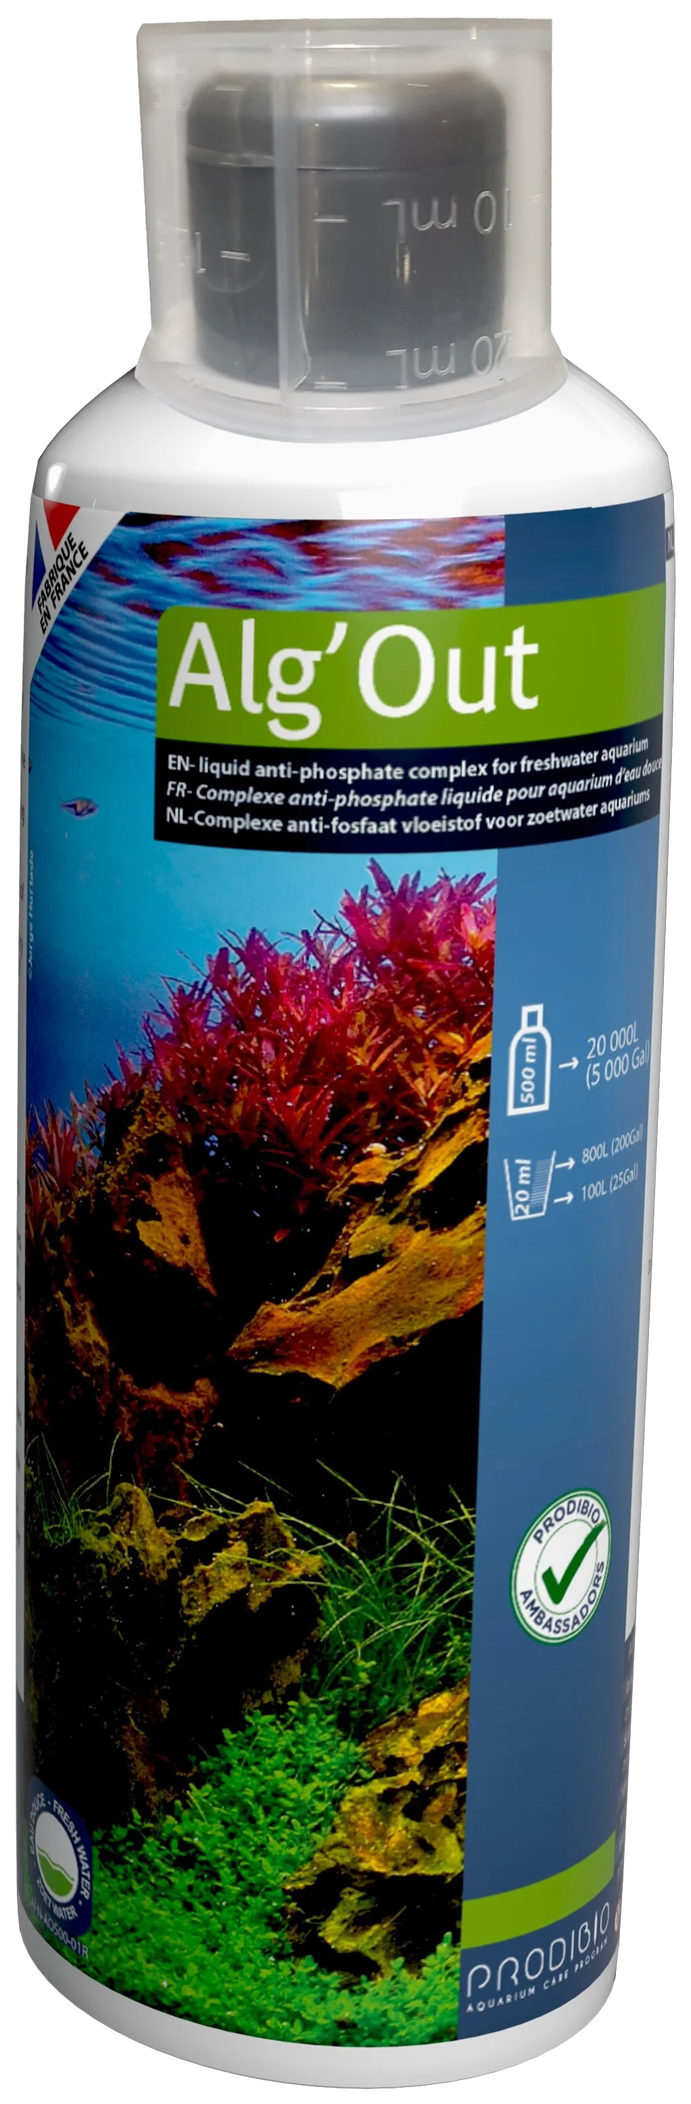 Кондиционер для пресноводных аквариумов Prodibio Alg`Out антифосфатный комплекс, 500 мл